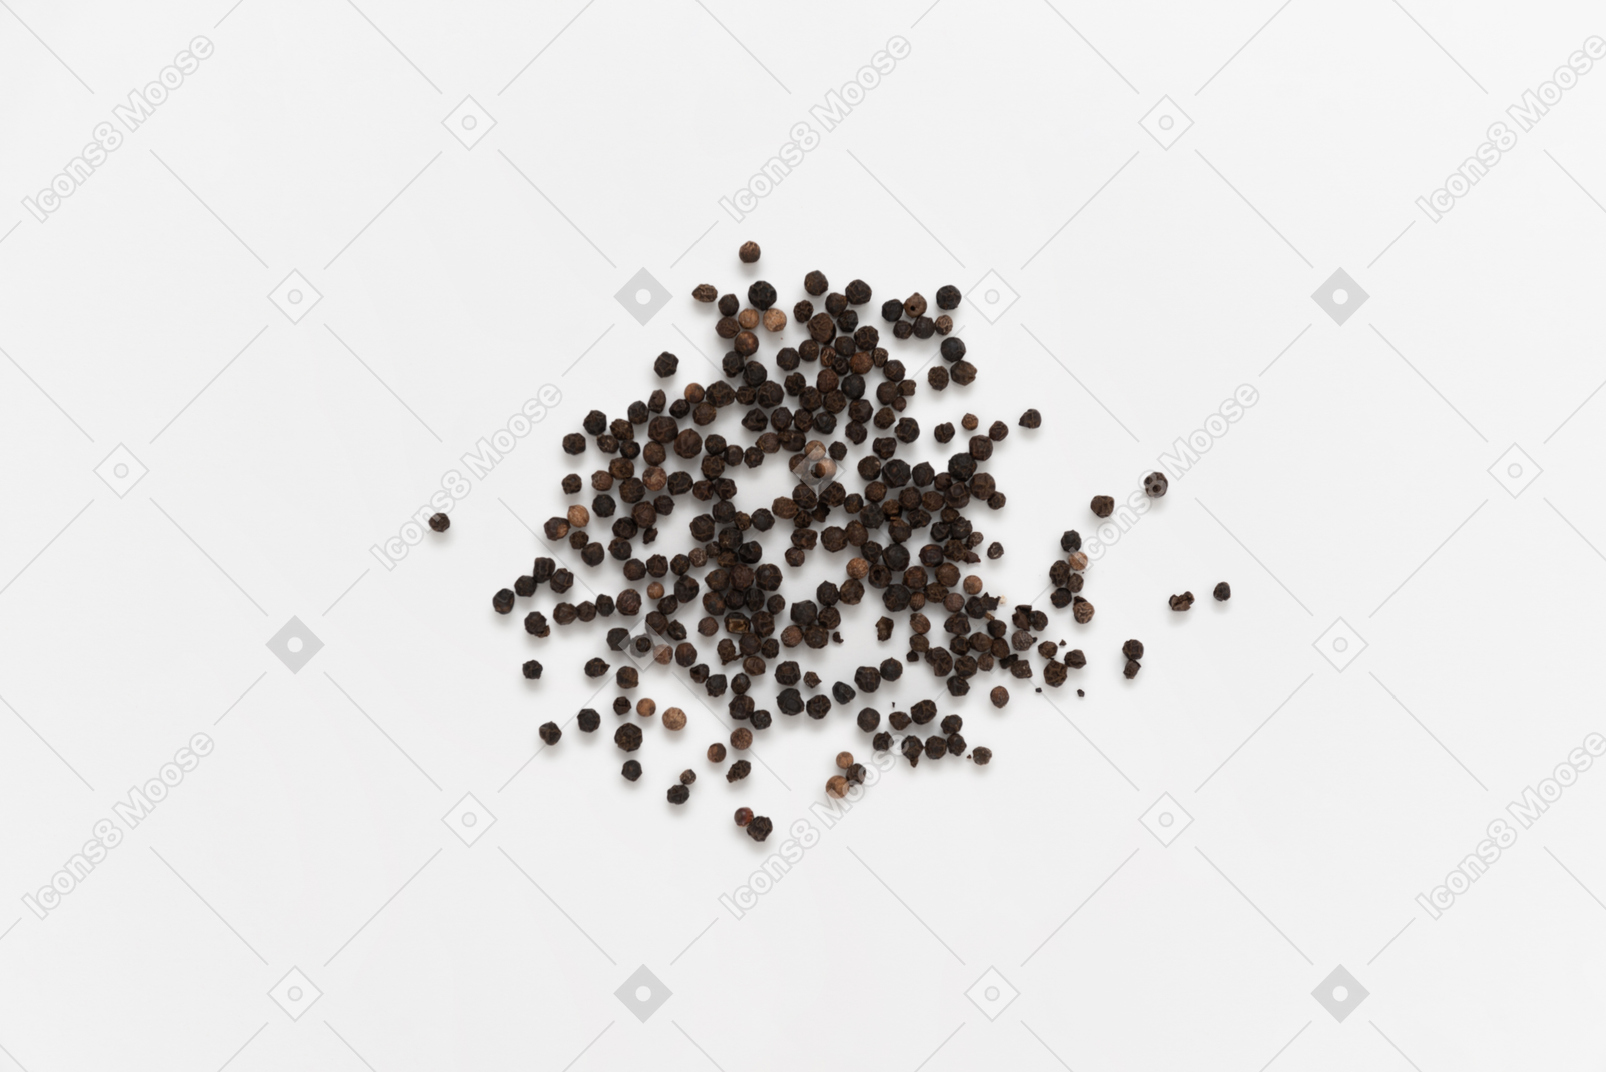 Black pepper beans on white background